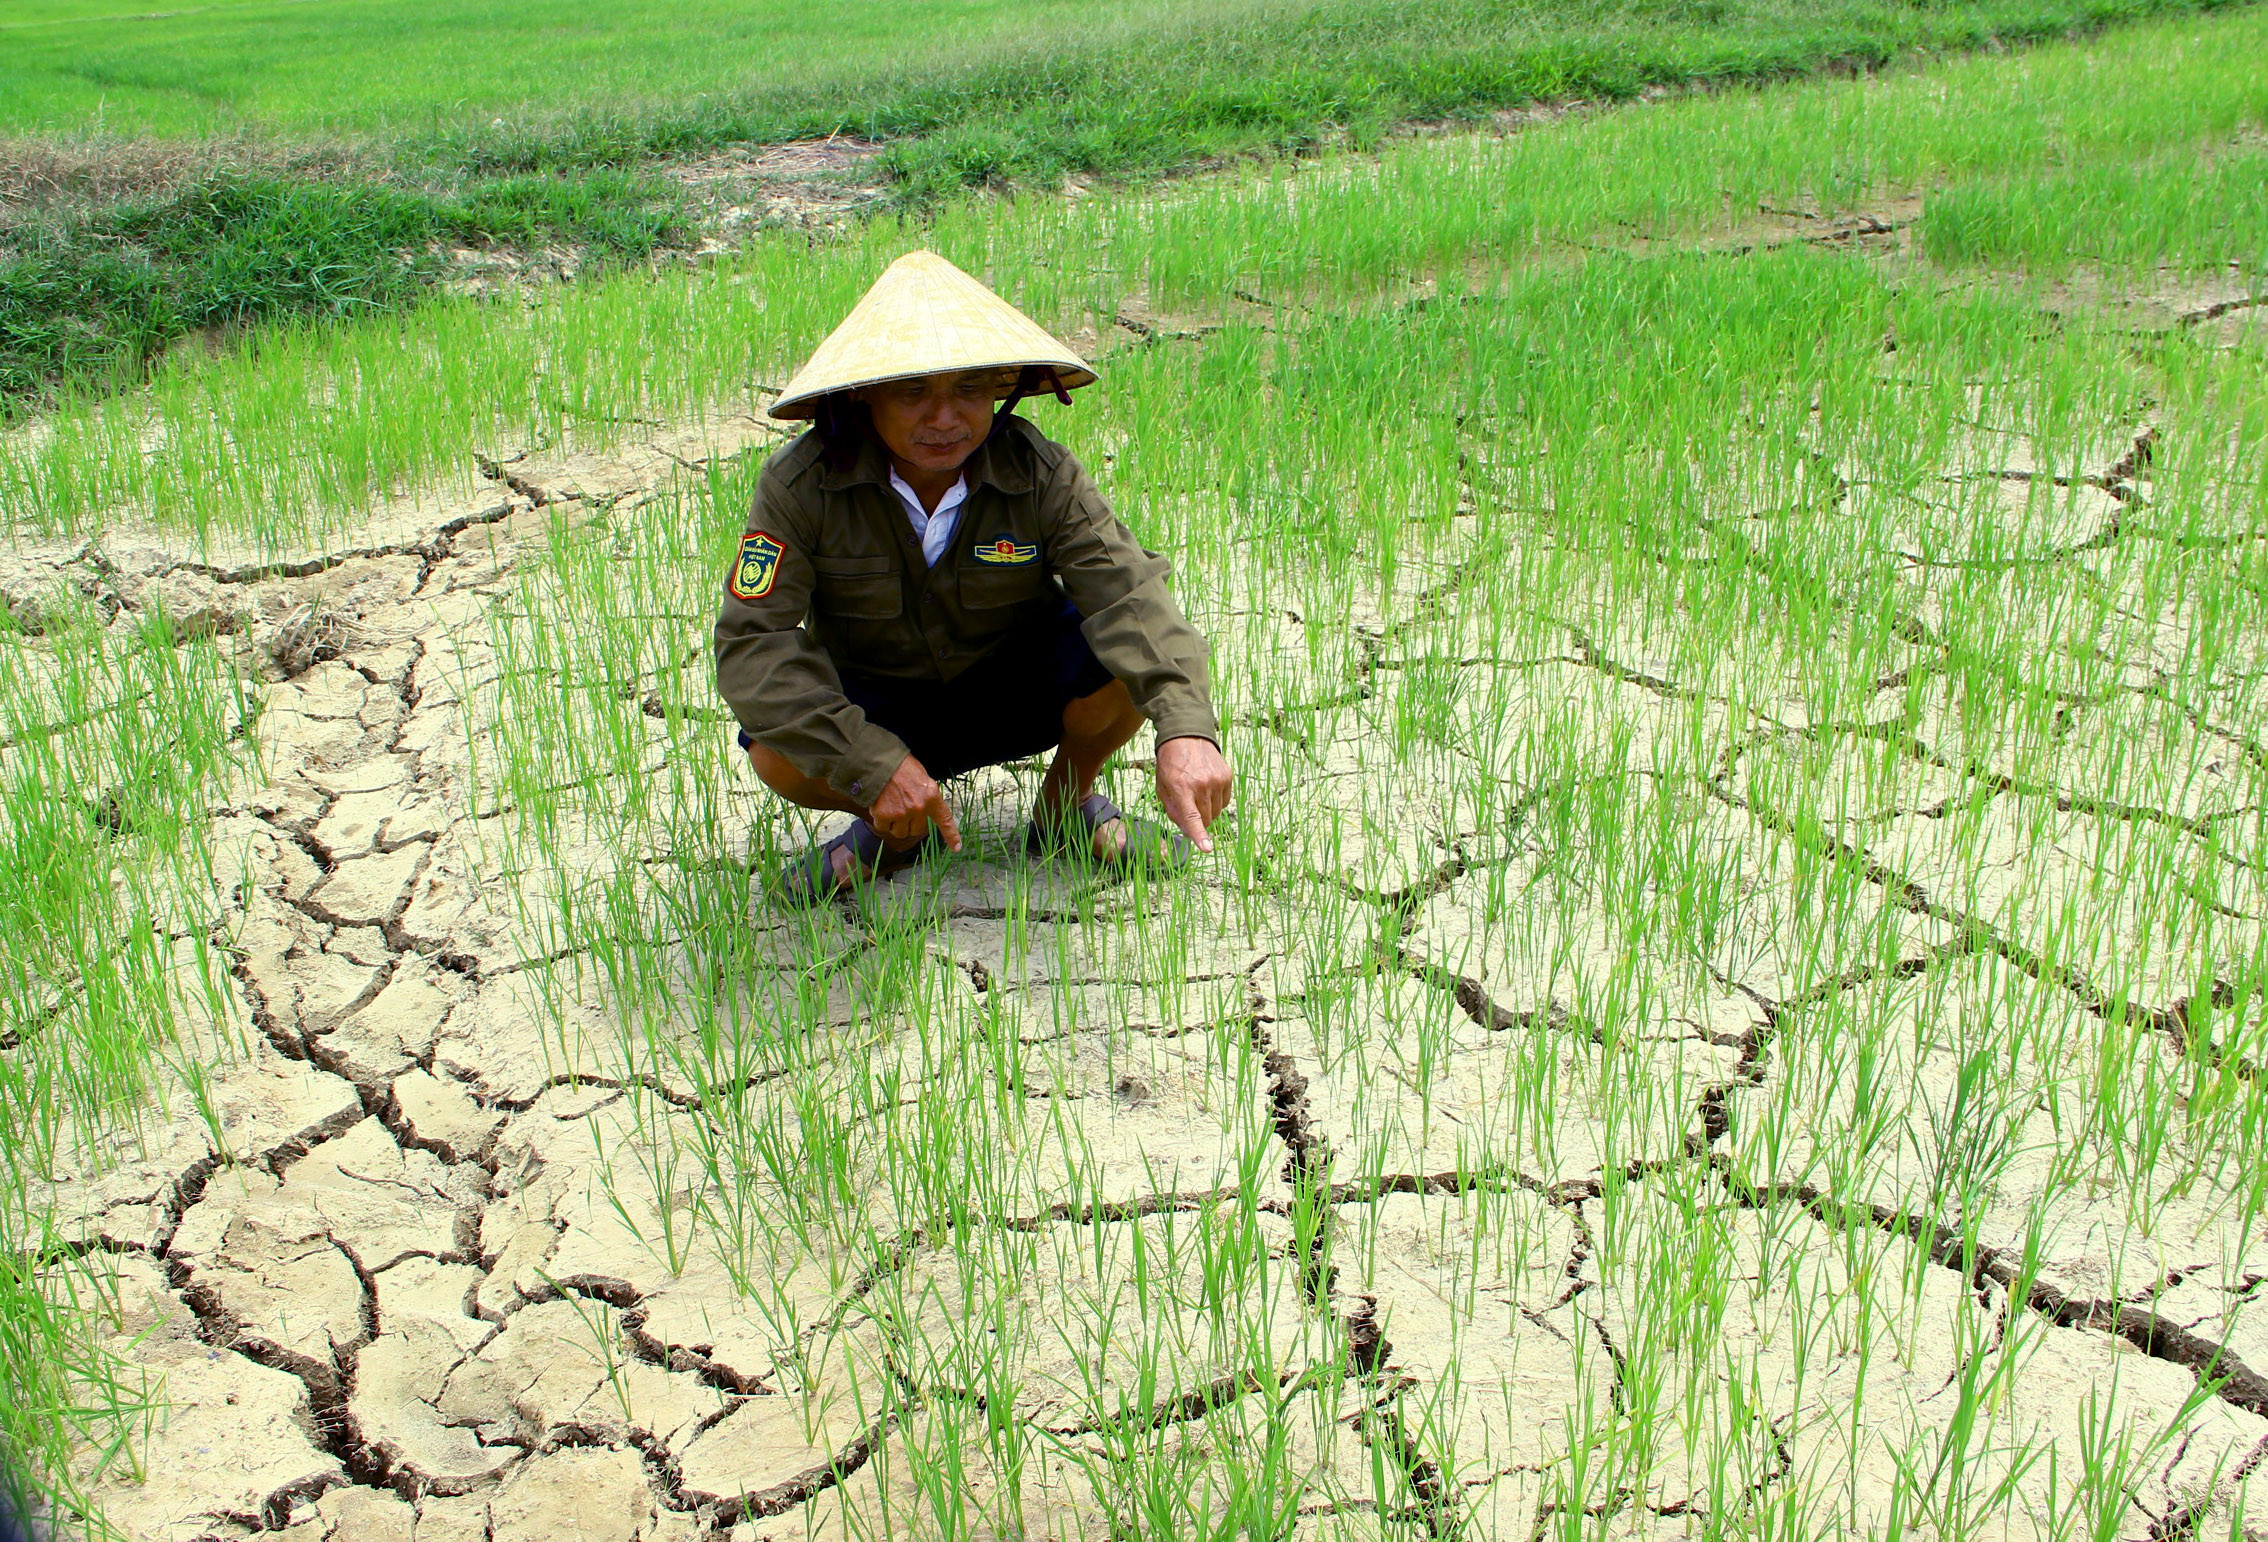 bna_Người dân xã Châu Nhân huyện Hưng Nguyên lo lắng vì nước nhiễm mặn nặng không thể bơm tưới cho lúa ảnh QA.jpg